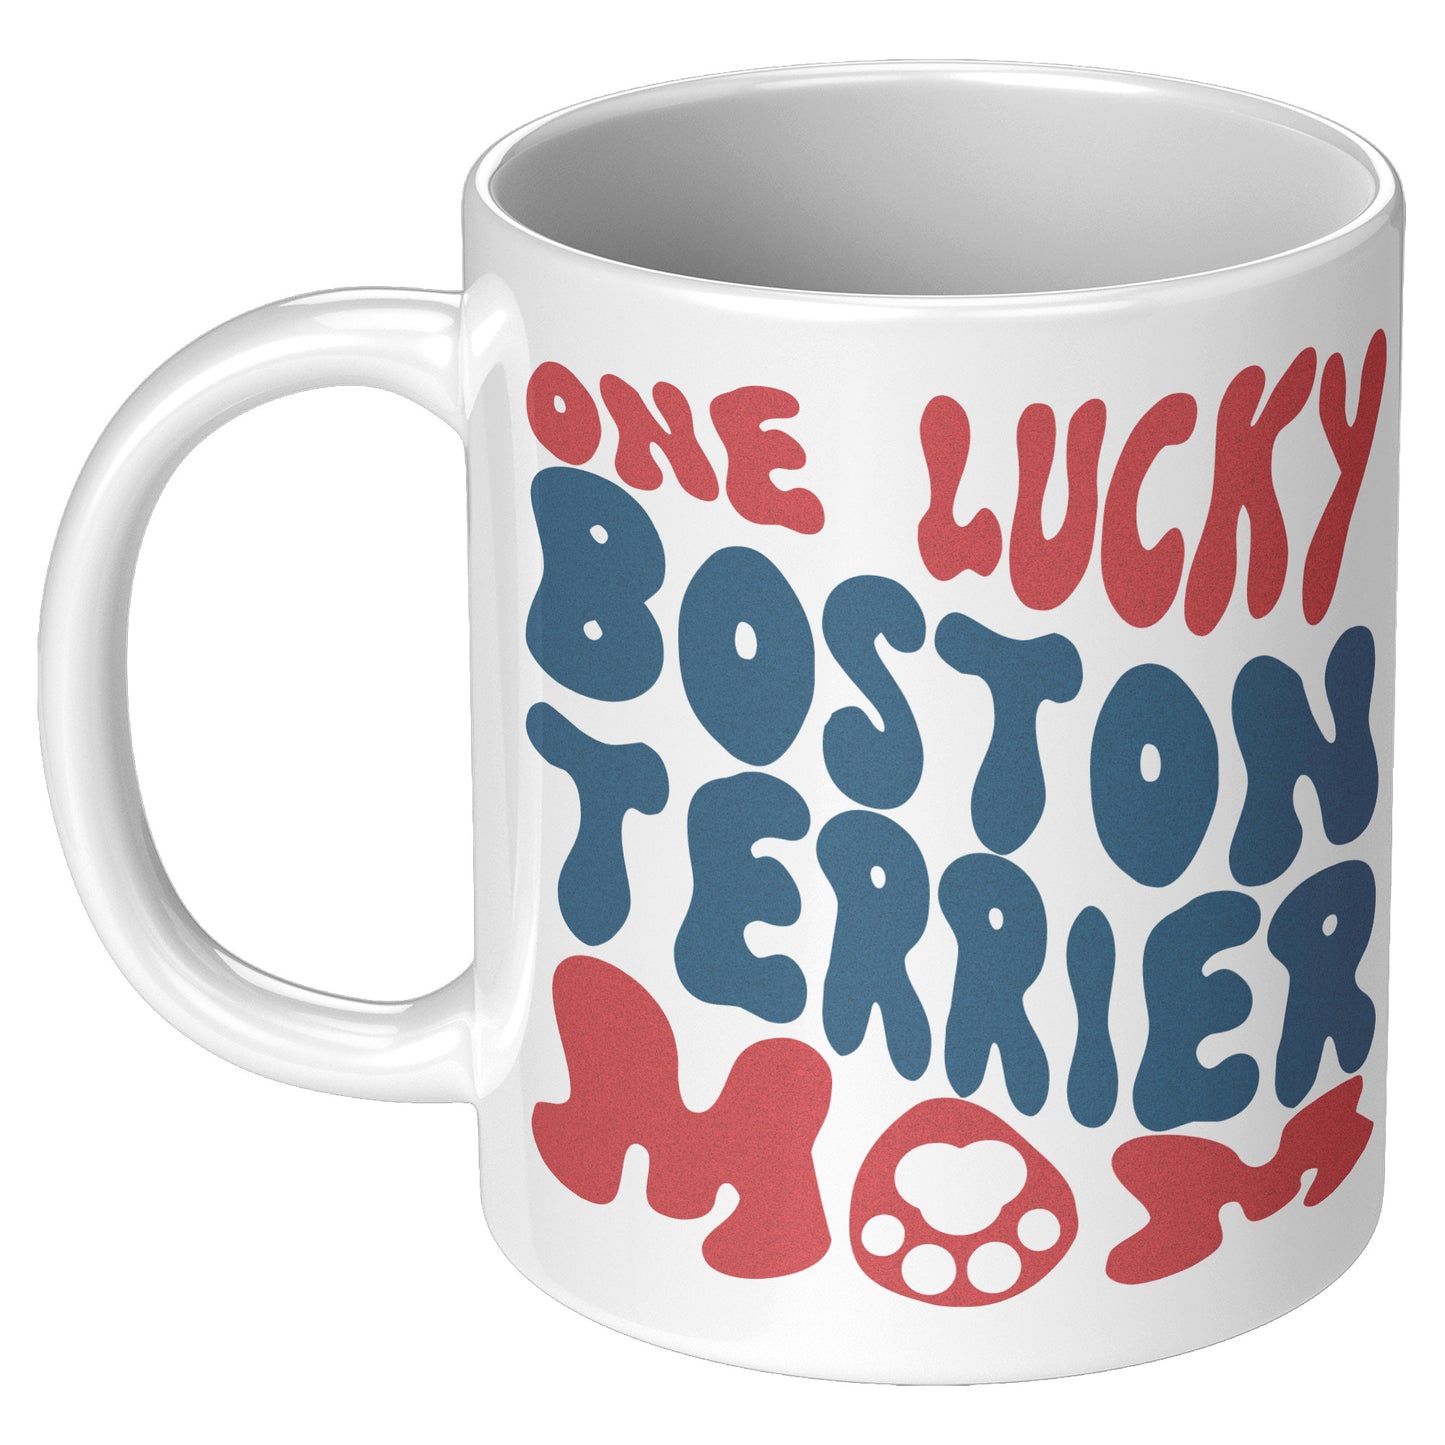 Clyde -Mug for Boston Terrier lovers